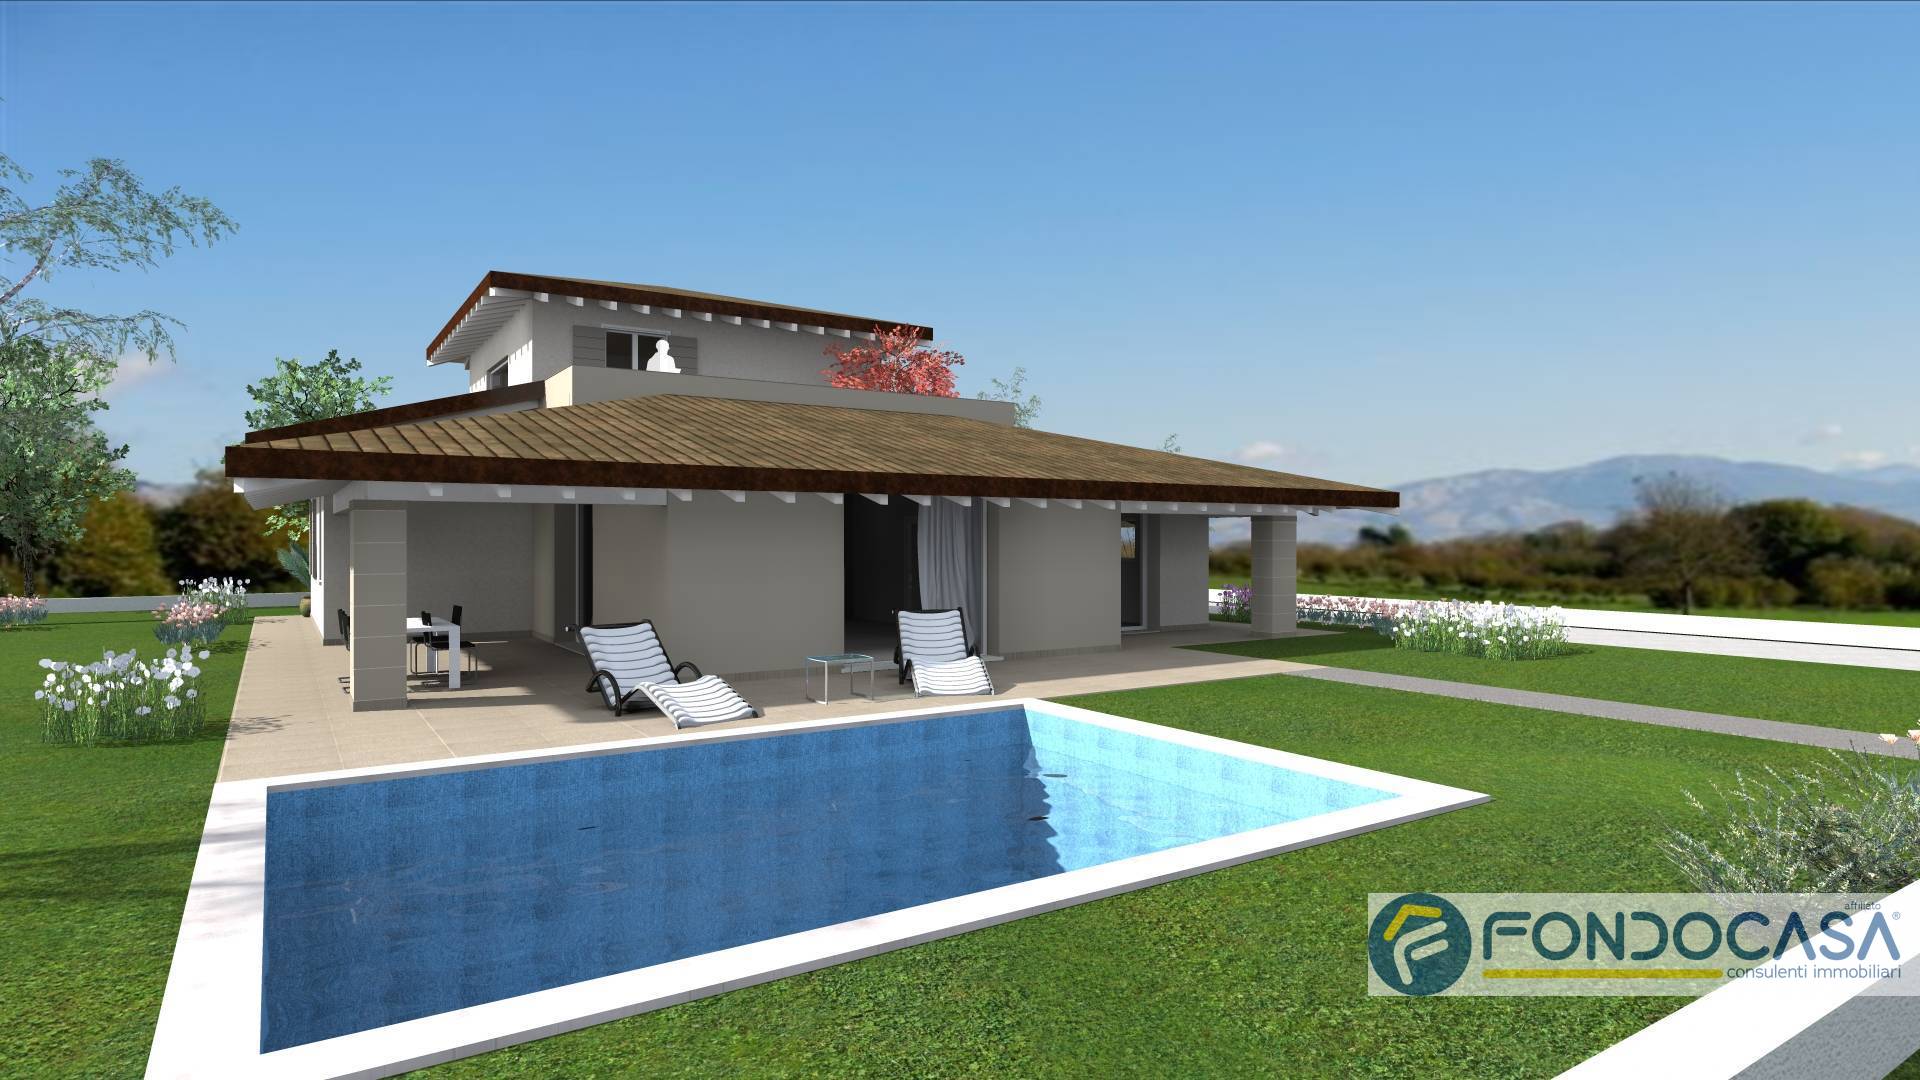 Villa in vendita a Rovato, 5 locali, prezzo € 485.000 | PortaleAgenzieImmobiliari.it